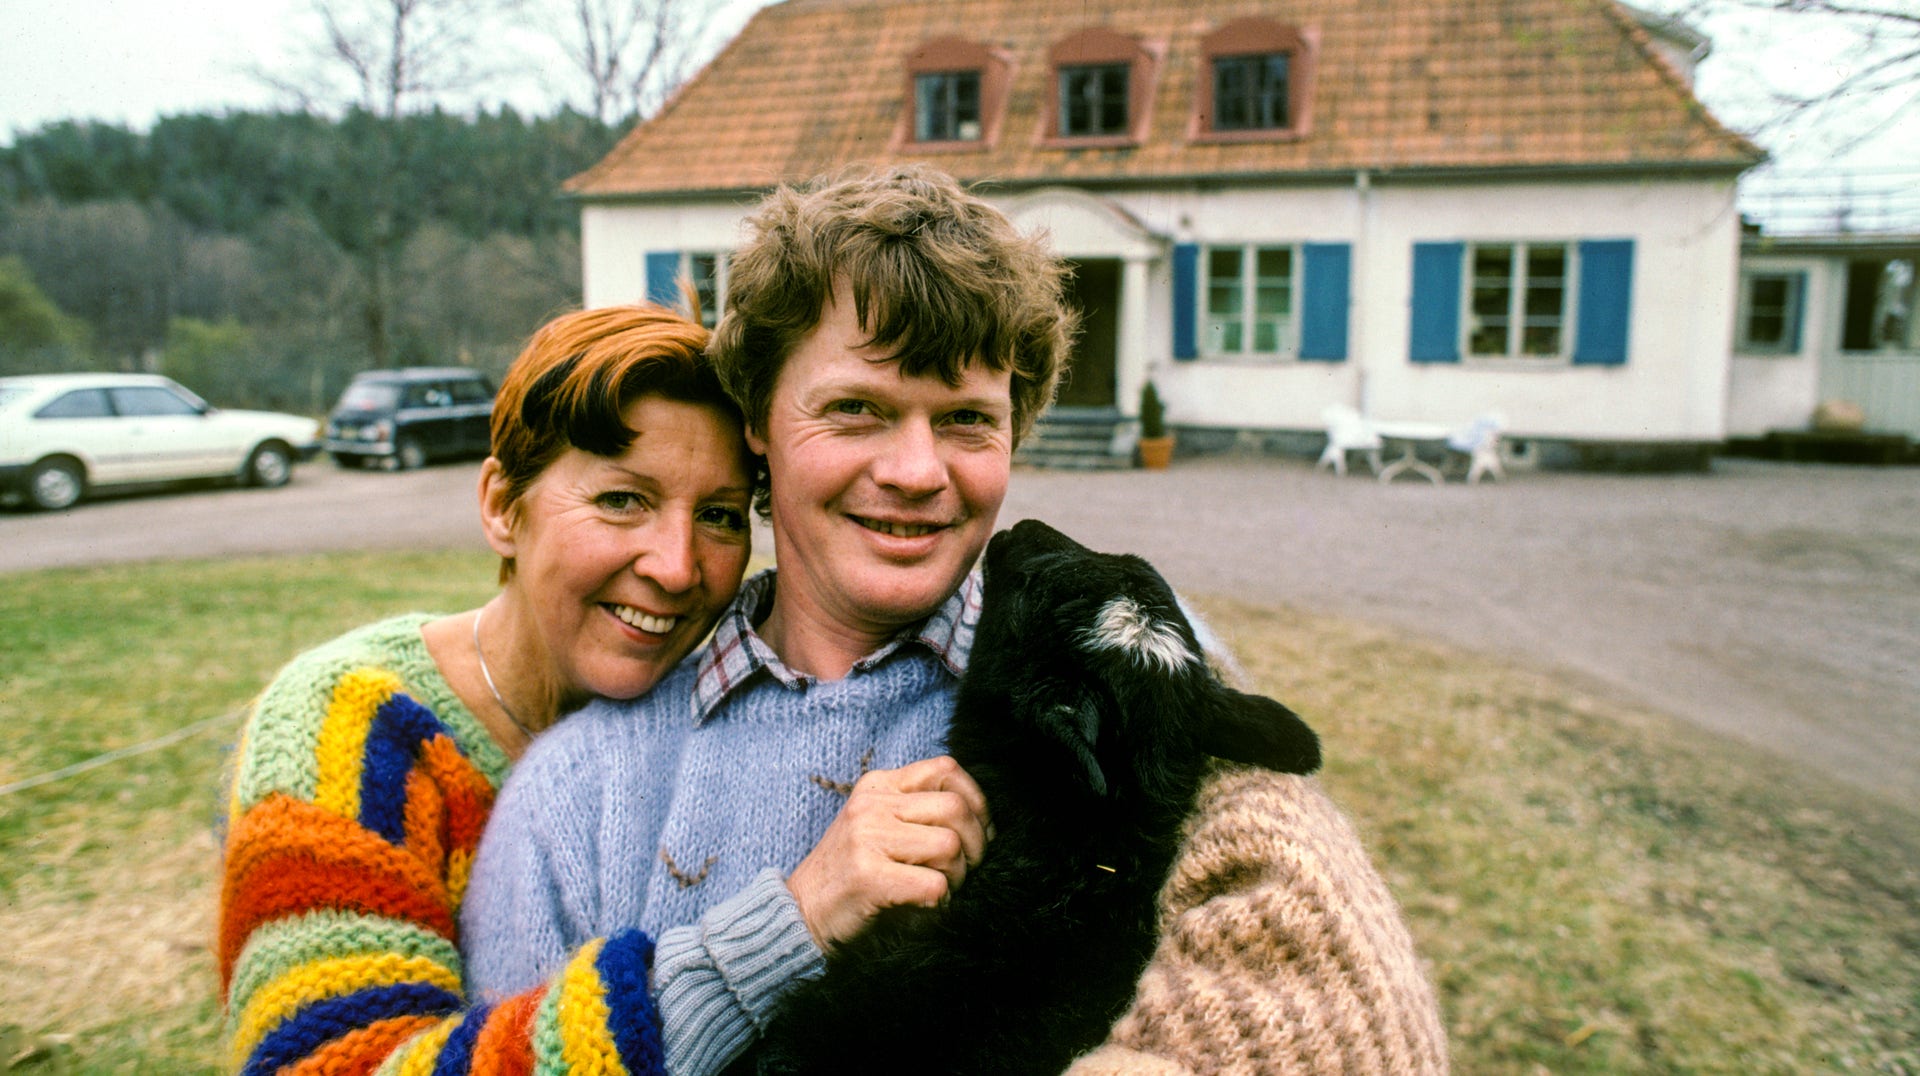 Kjerstin Dellert tillsammans med maken Nils-Åke Häggblom på deras gård utanför Sigtuna i maj 1982.